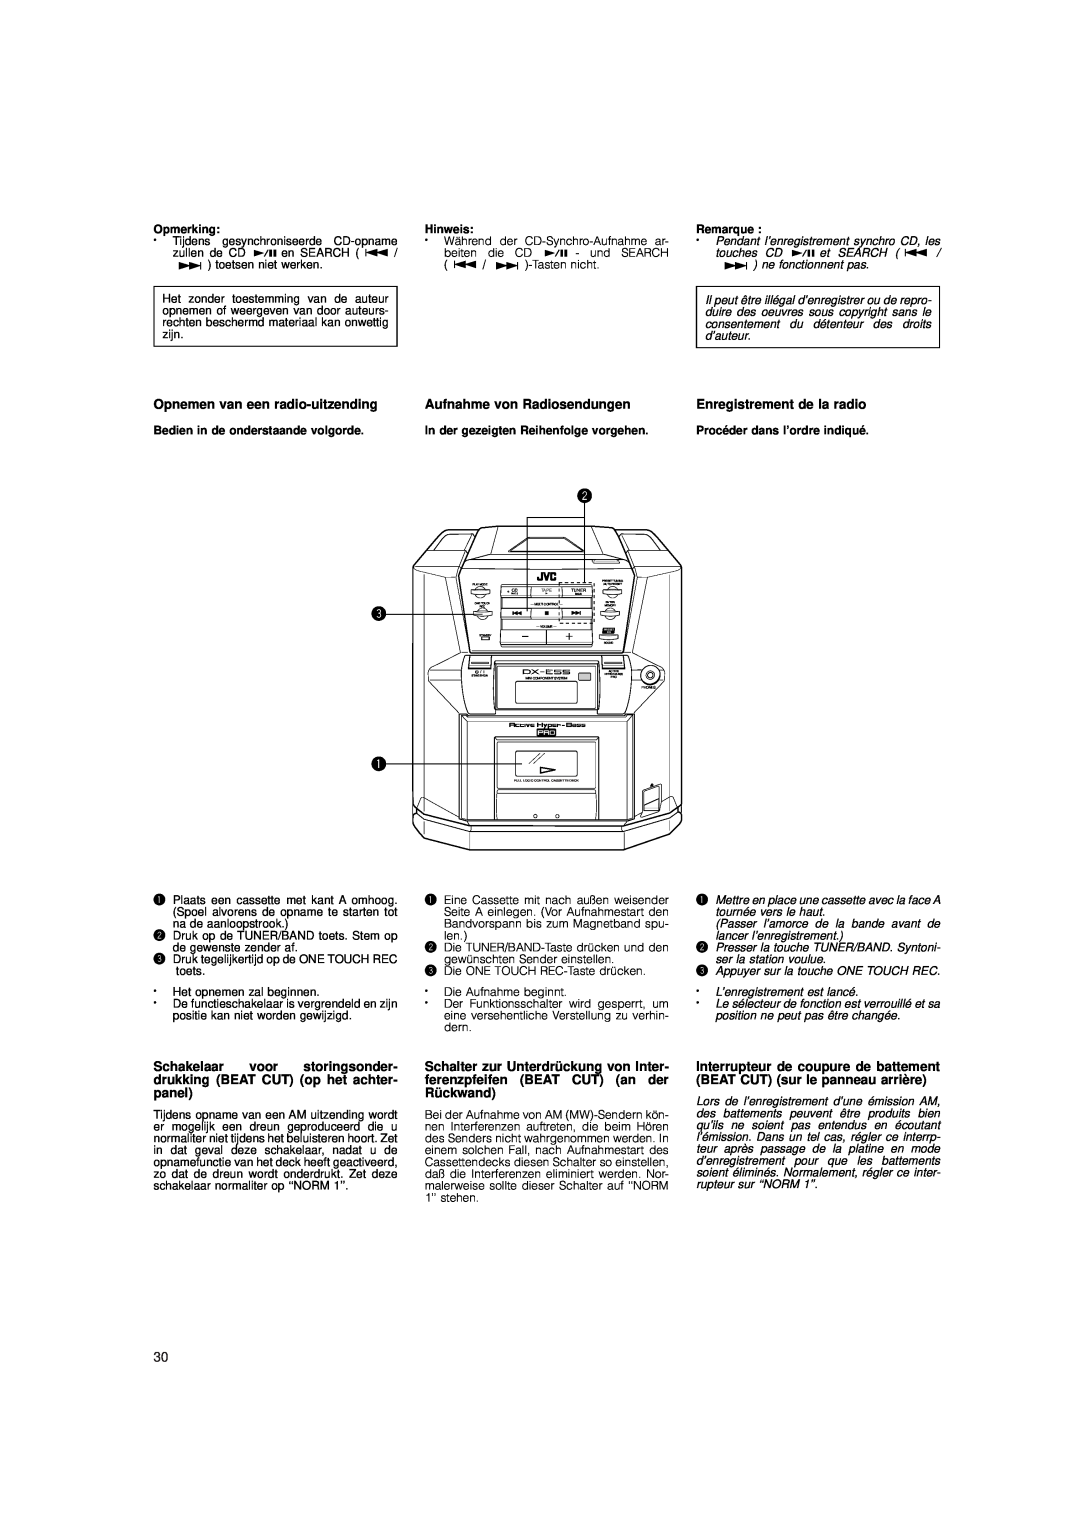 JVC DX-E55 manual Opnemen van een radio-uitzending, Aufnahme von Radiosendungen, Enregistrement de la radio 